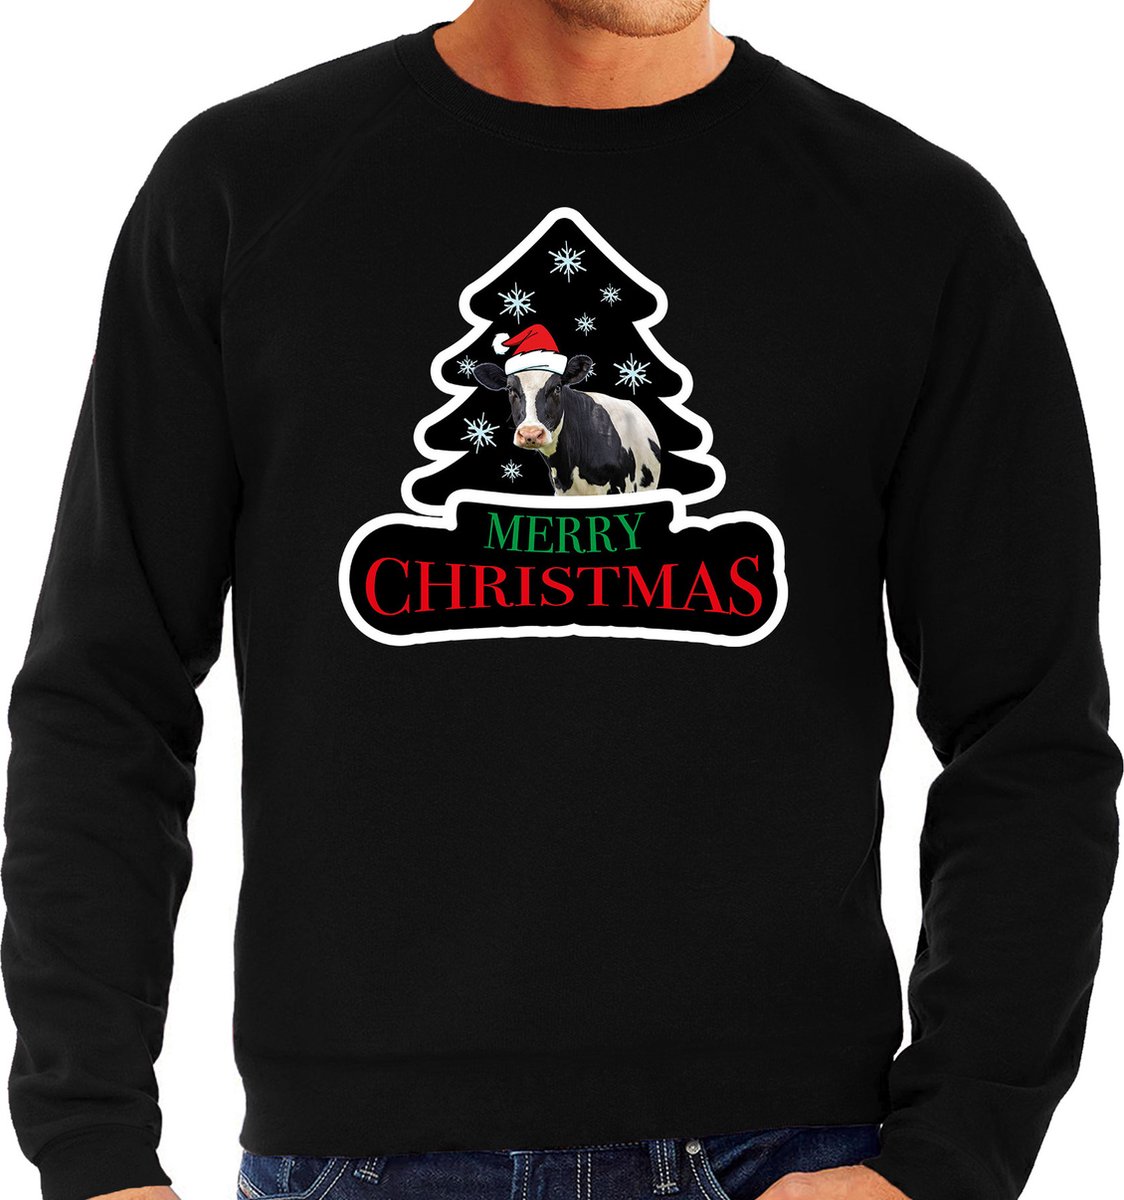 Dieren kersttrui koe zwart heren - Foute koeien kerstsweater - Kerst outfit dieren liefhebber S